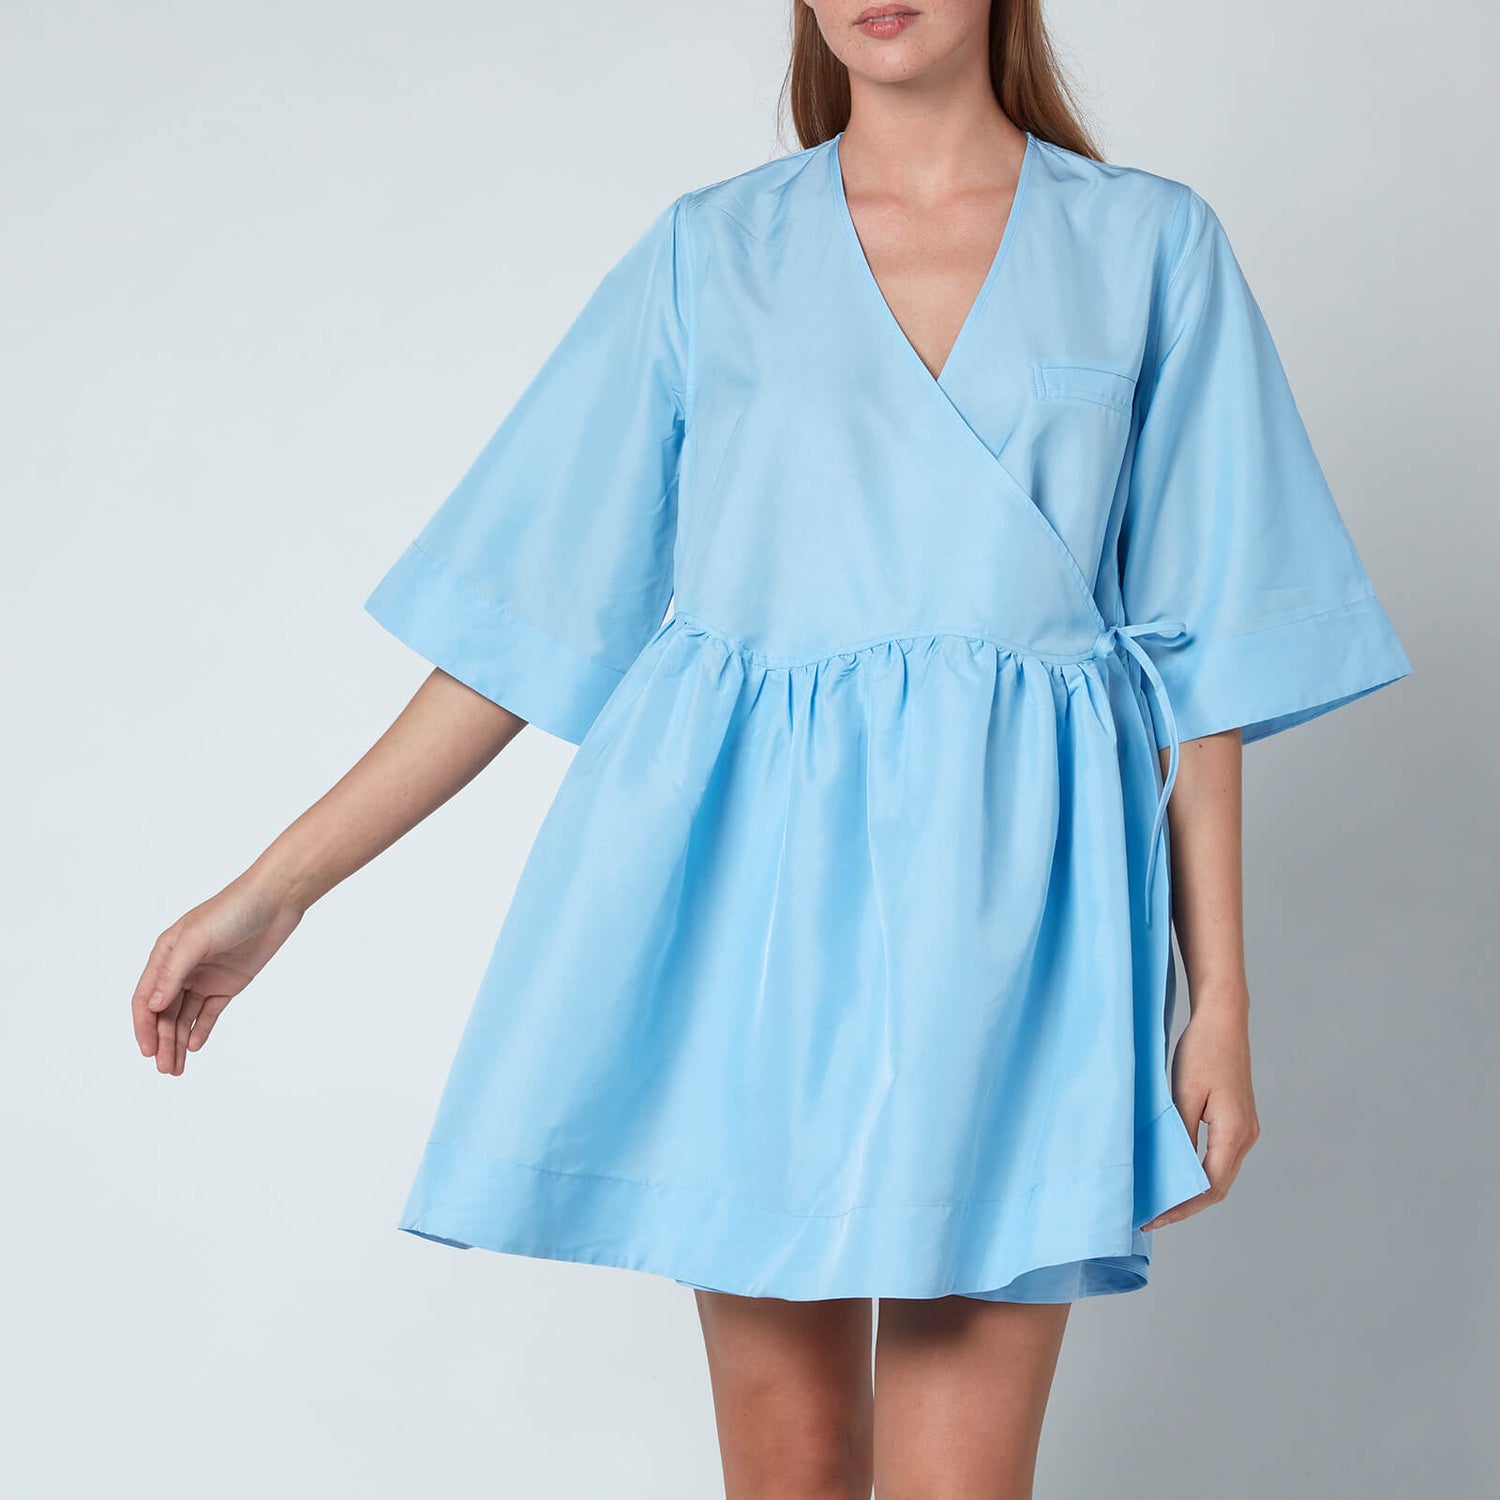 Ganni Women's Crispy Tafetta Dress - Airy Blue - XXS/XS